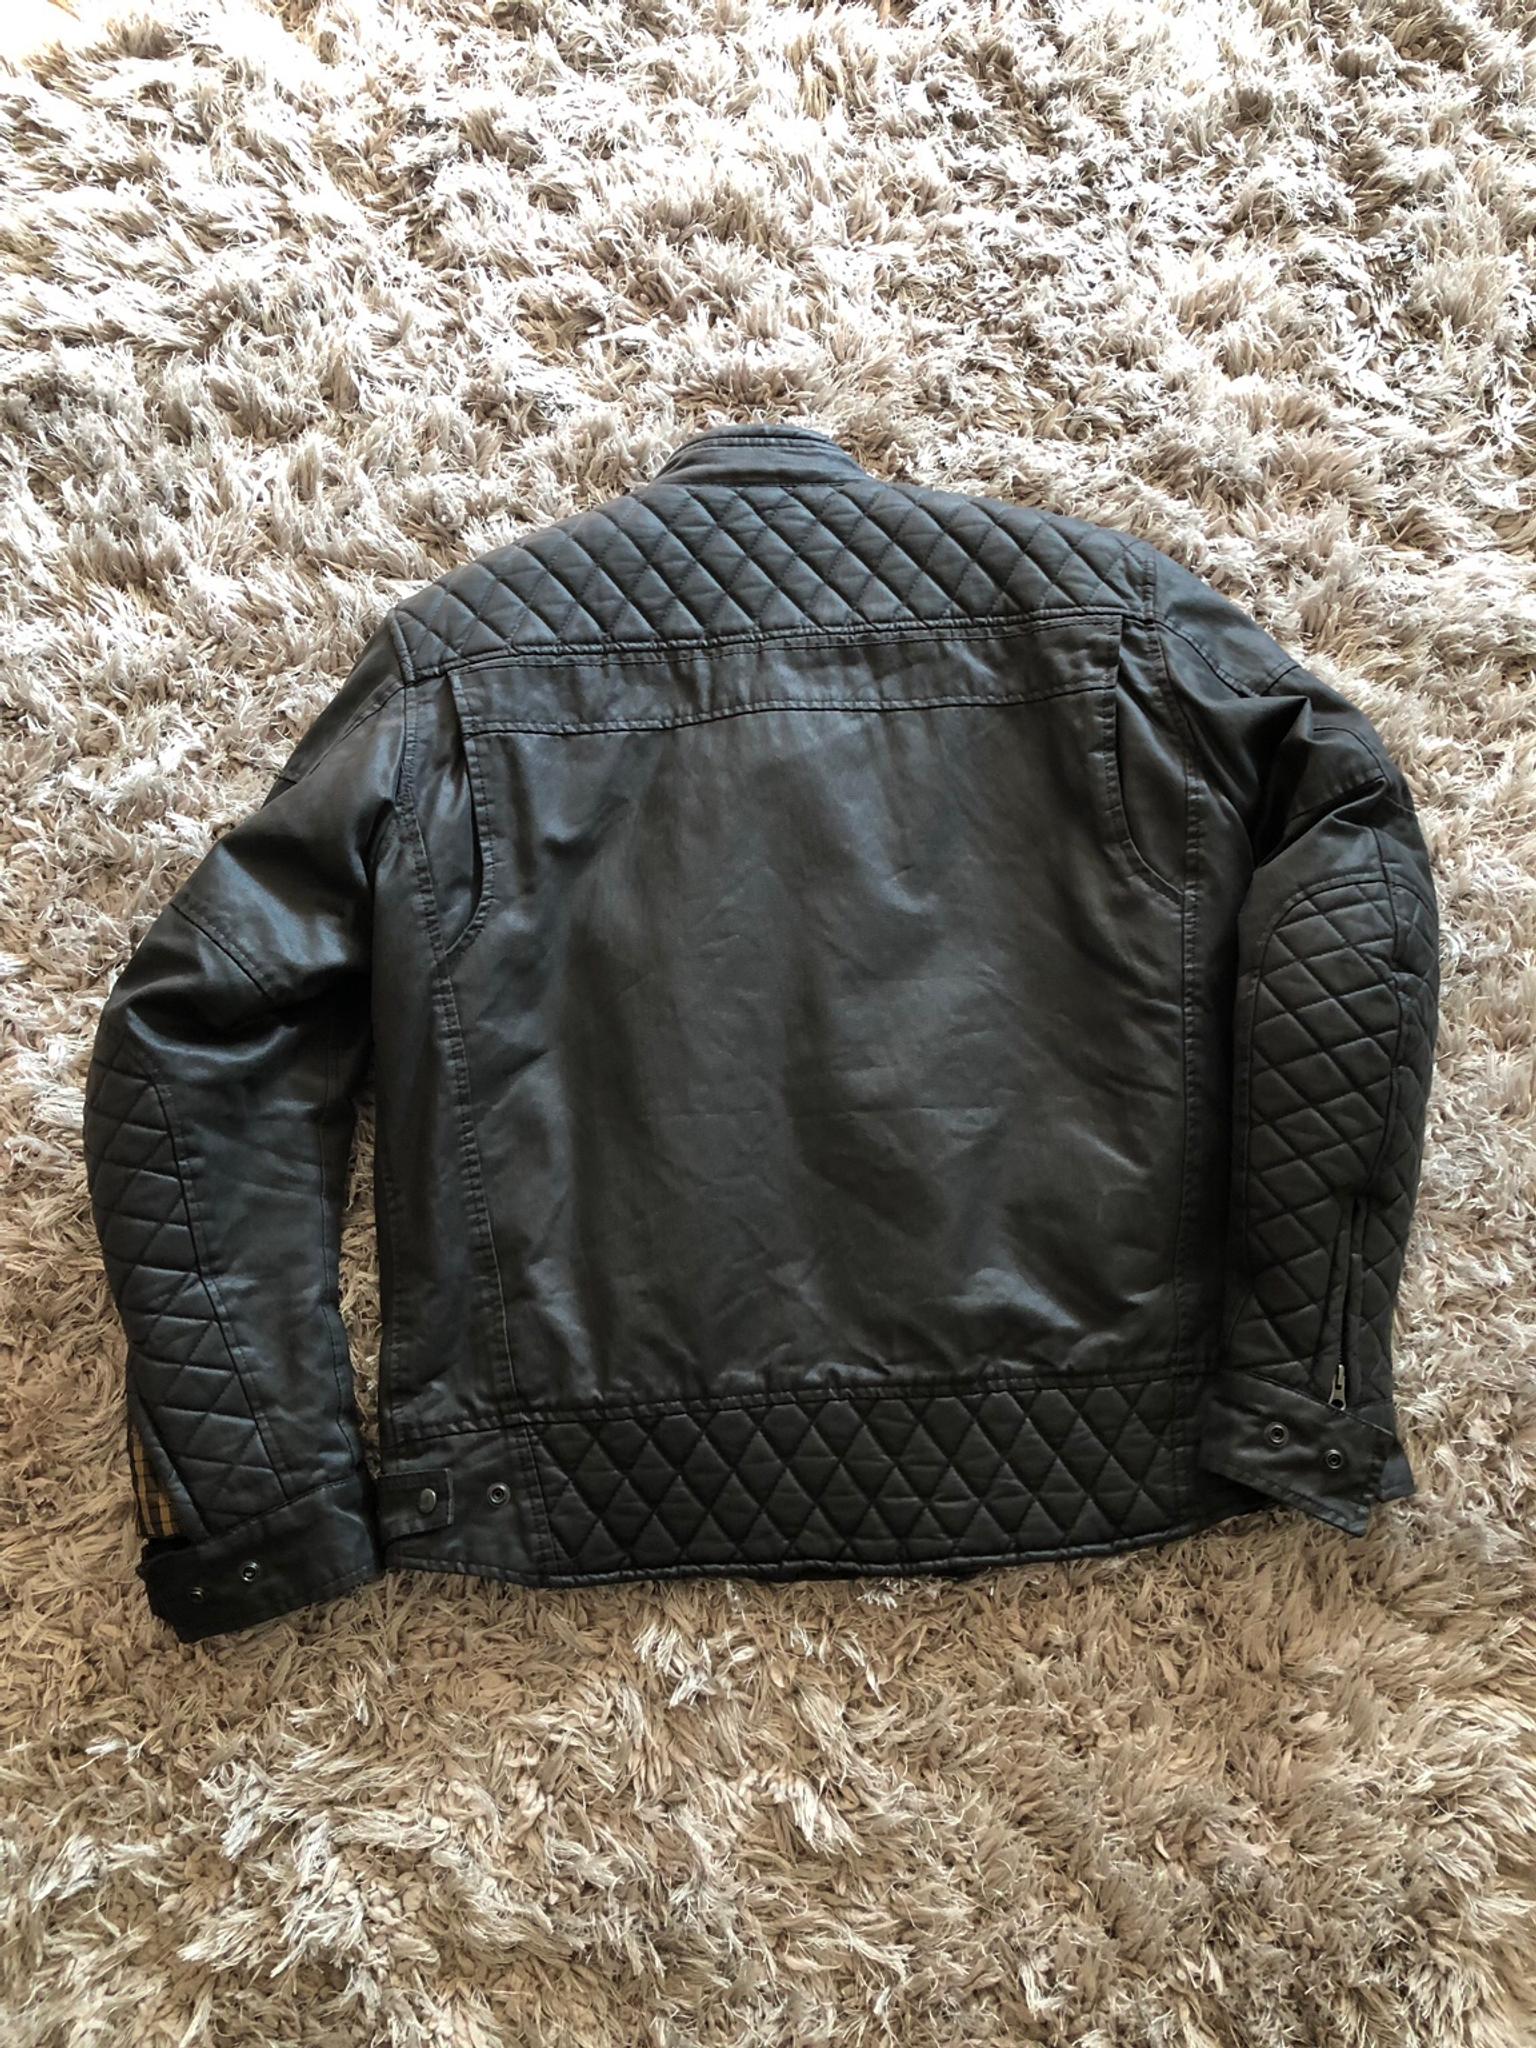 oxford hardy wax motorcycle jacket